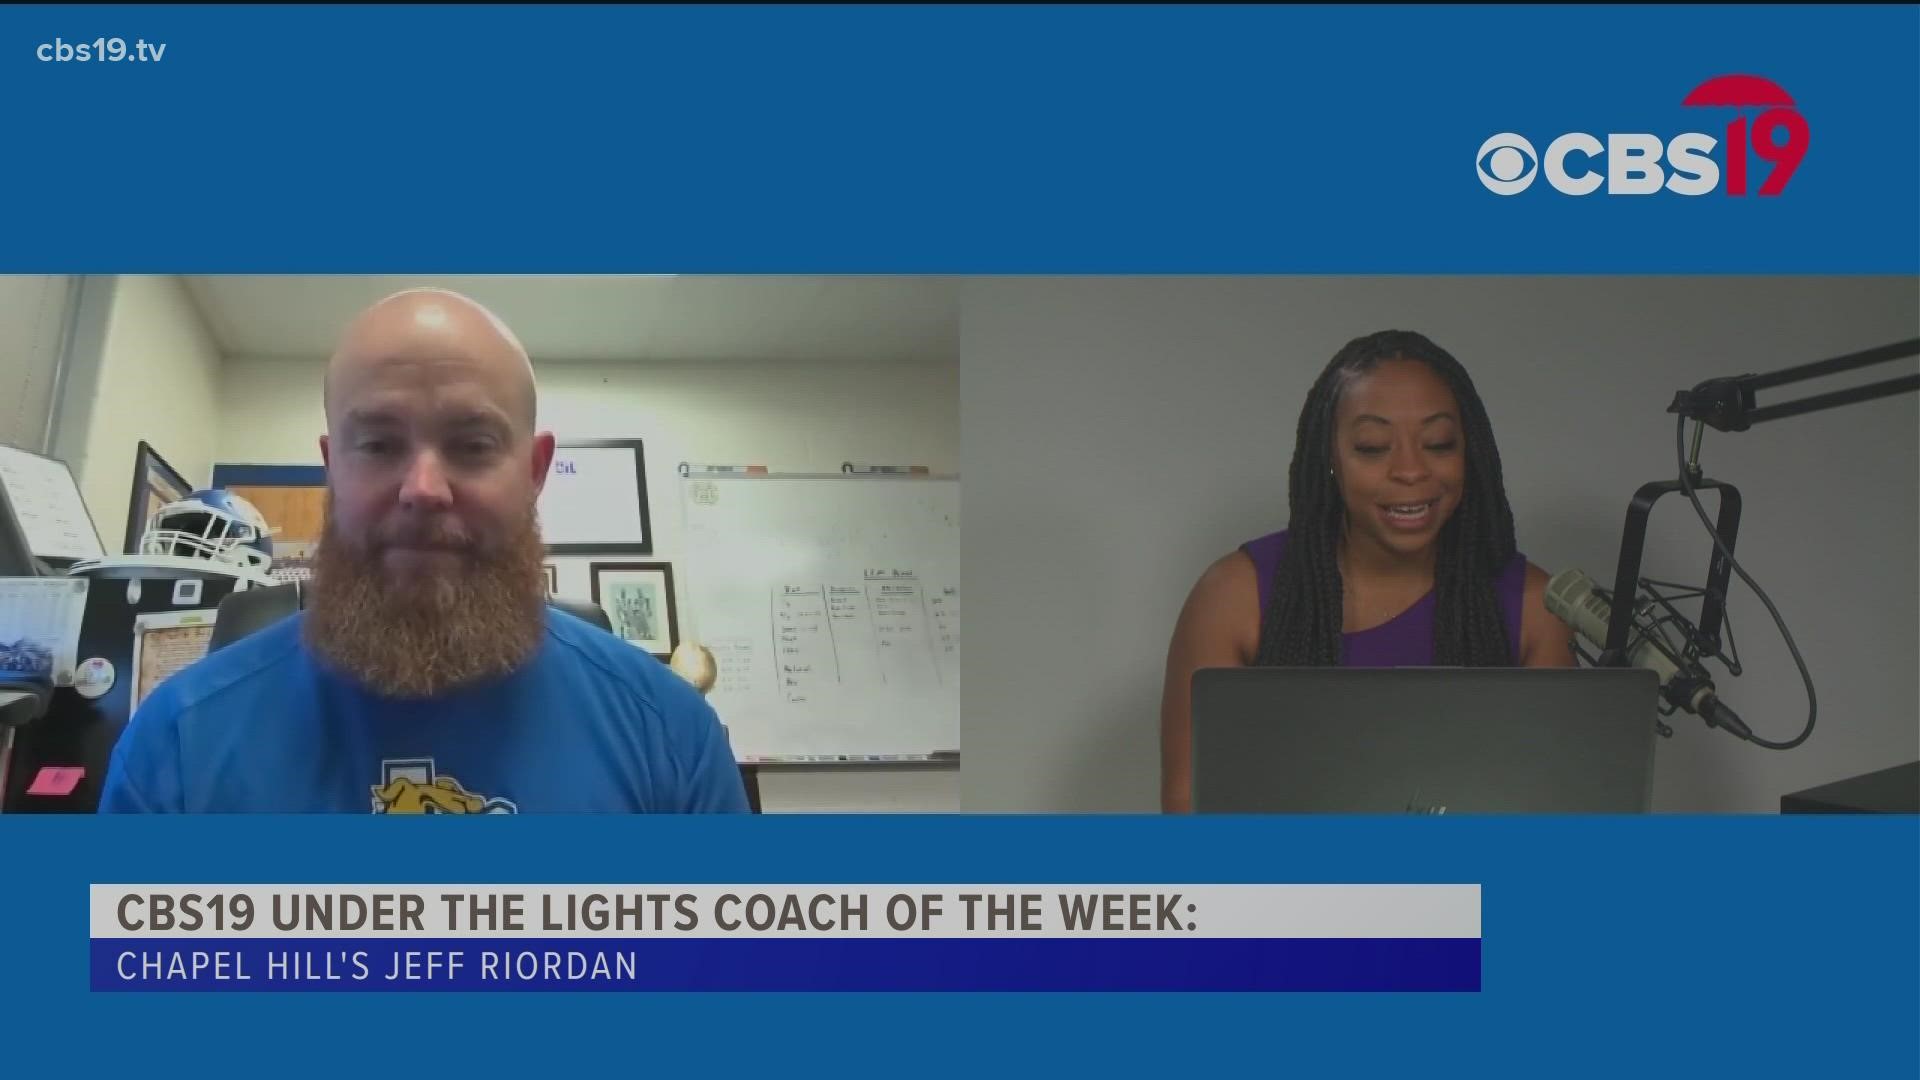 Chapel Hill's Jeff Riordan is CBS19's Coach of the Week.